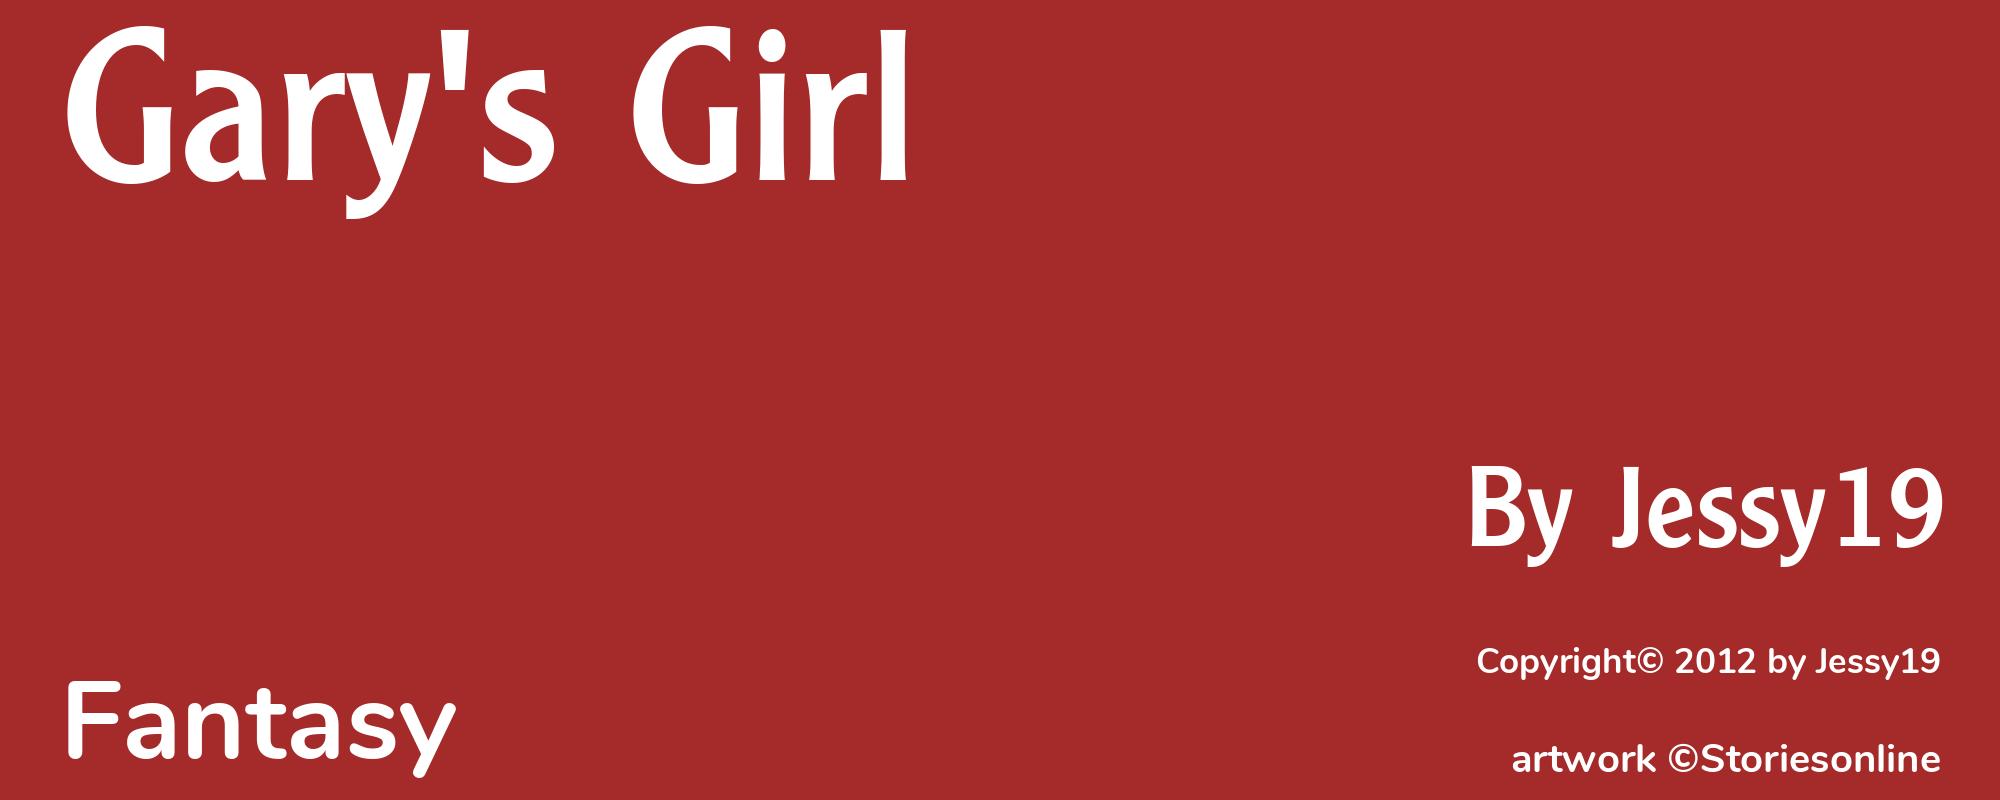 Gary's Girl - Cover